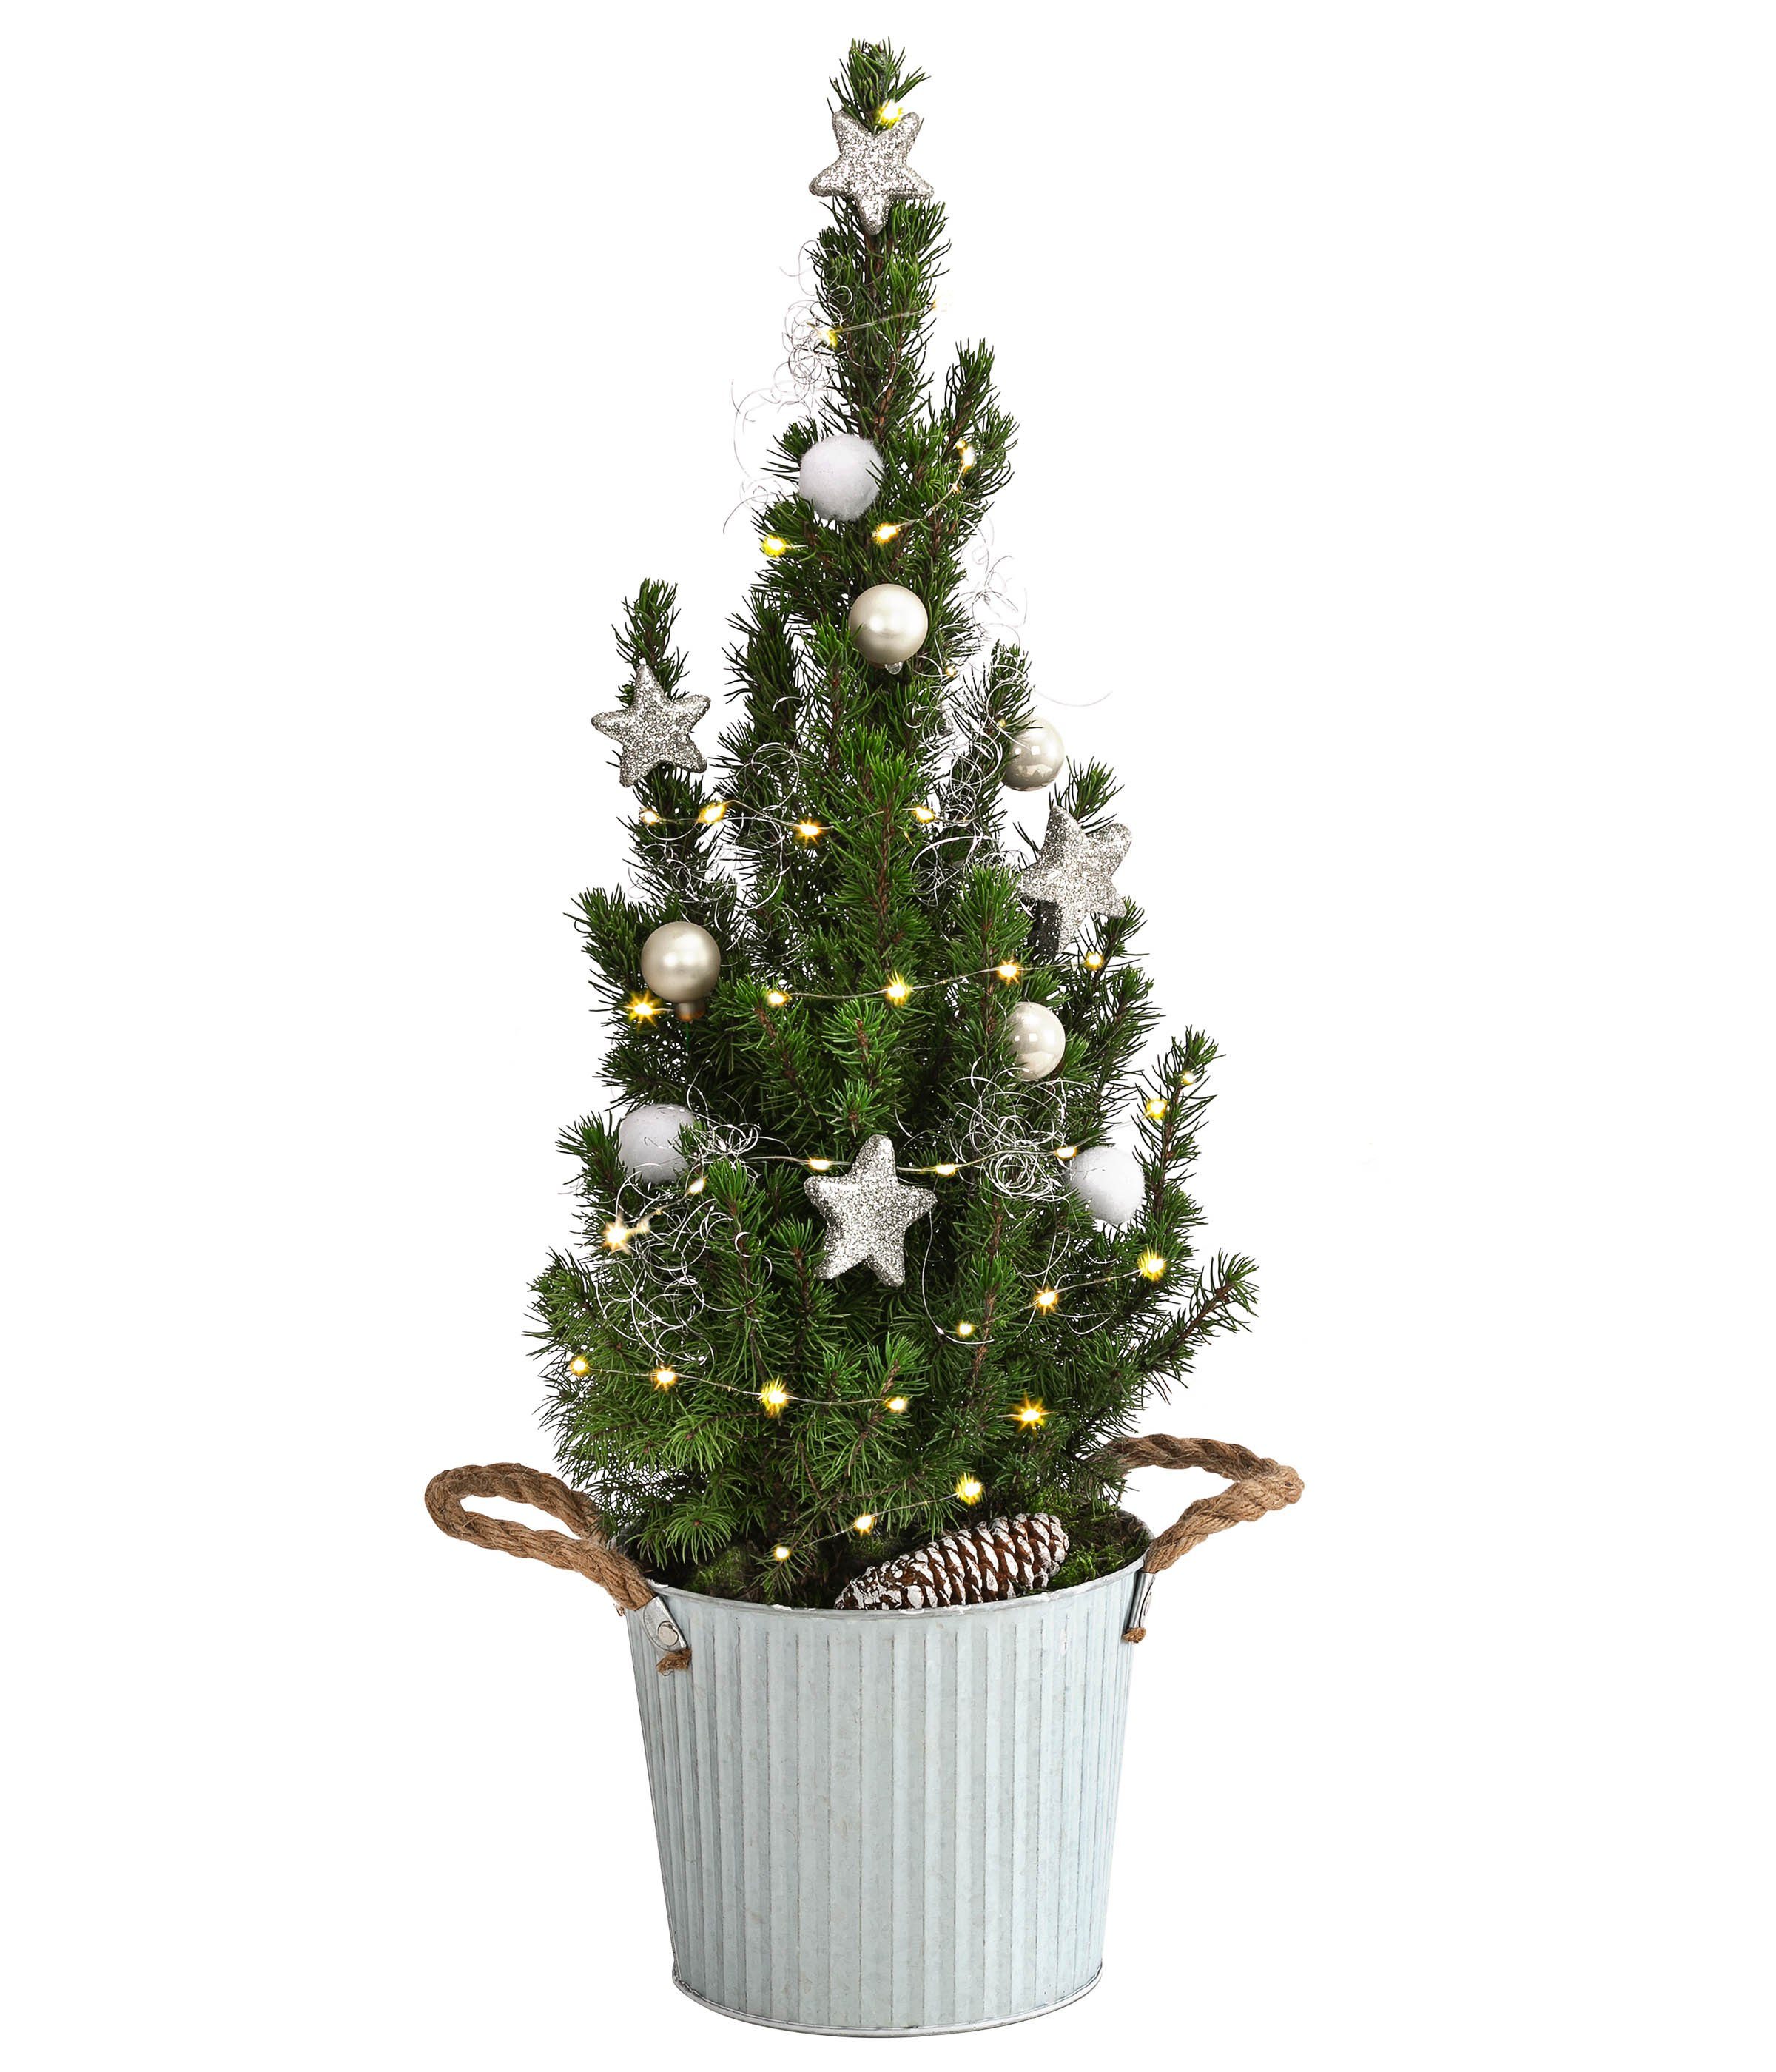 Dehner Echter Weihnachtsbaum »Linus, geschmückt, 50-55 cm, mit Lichterkette«,  mit Timer-Funktion, echte Mini-Zuckerhutfichte im Zinktopf Ø 17 cm